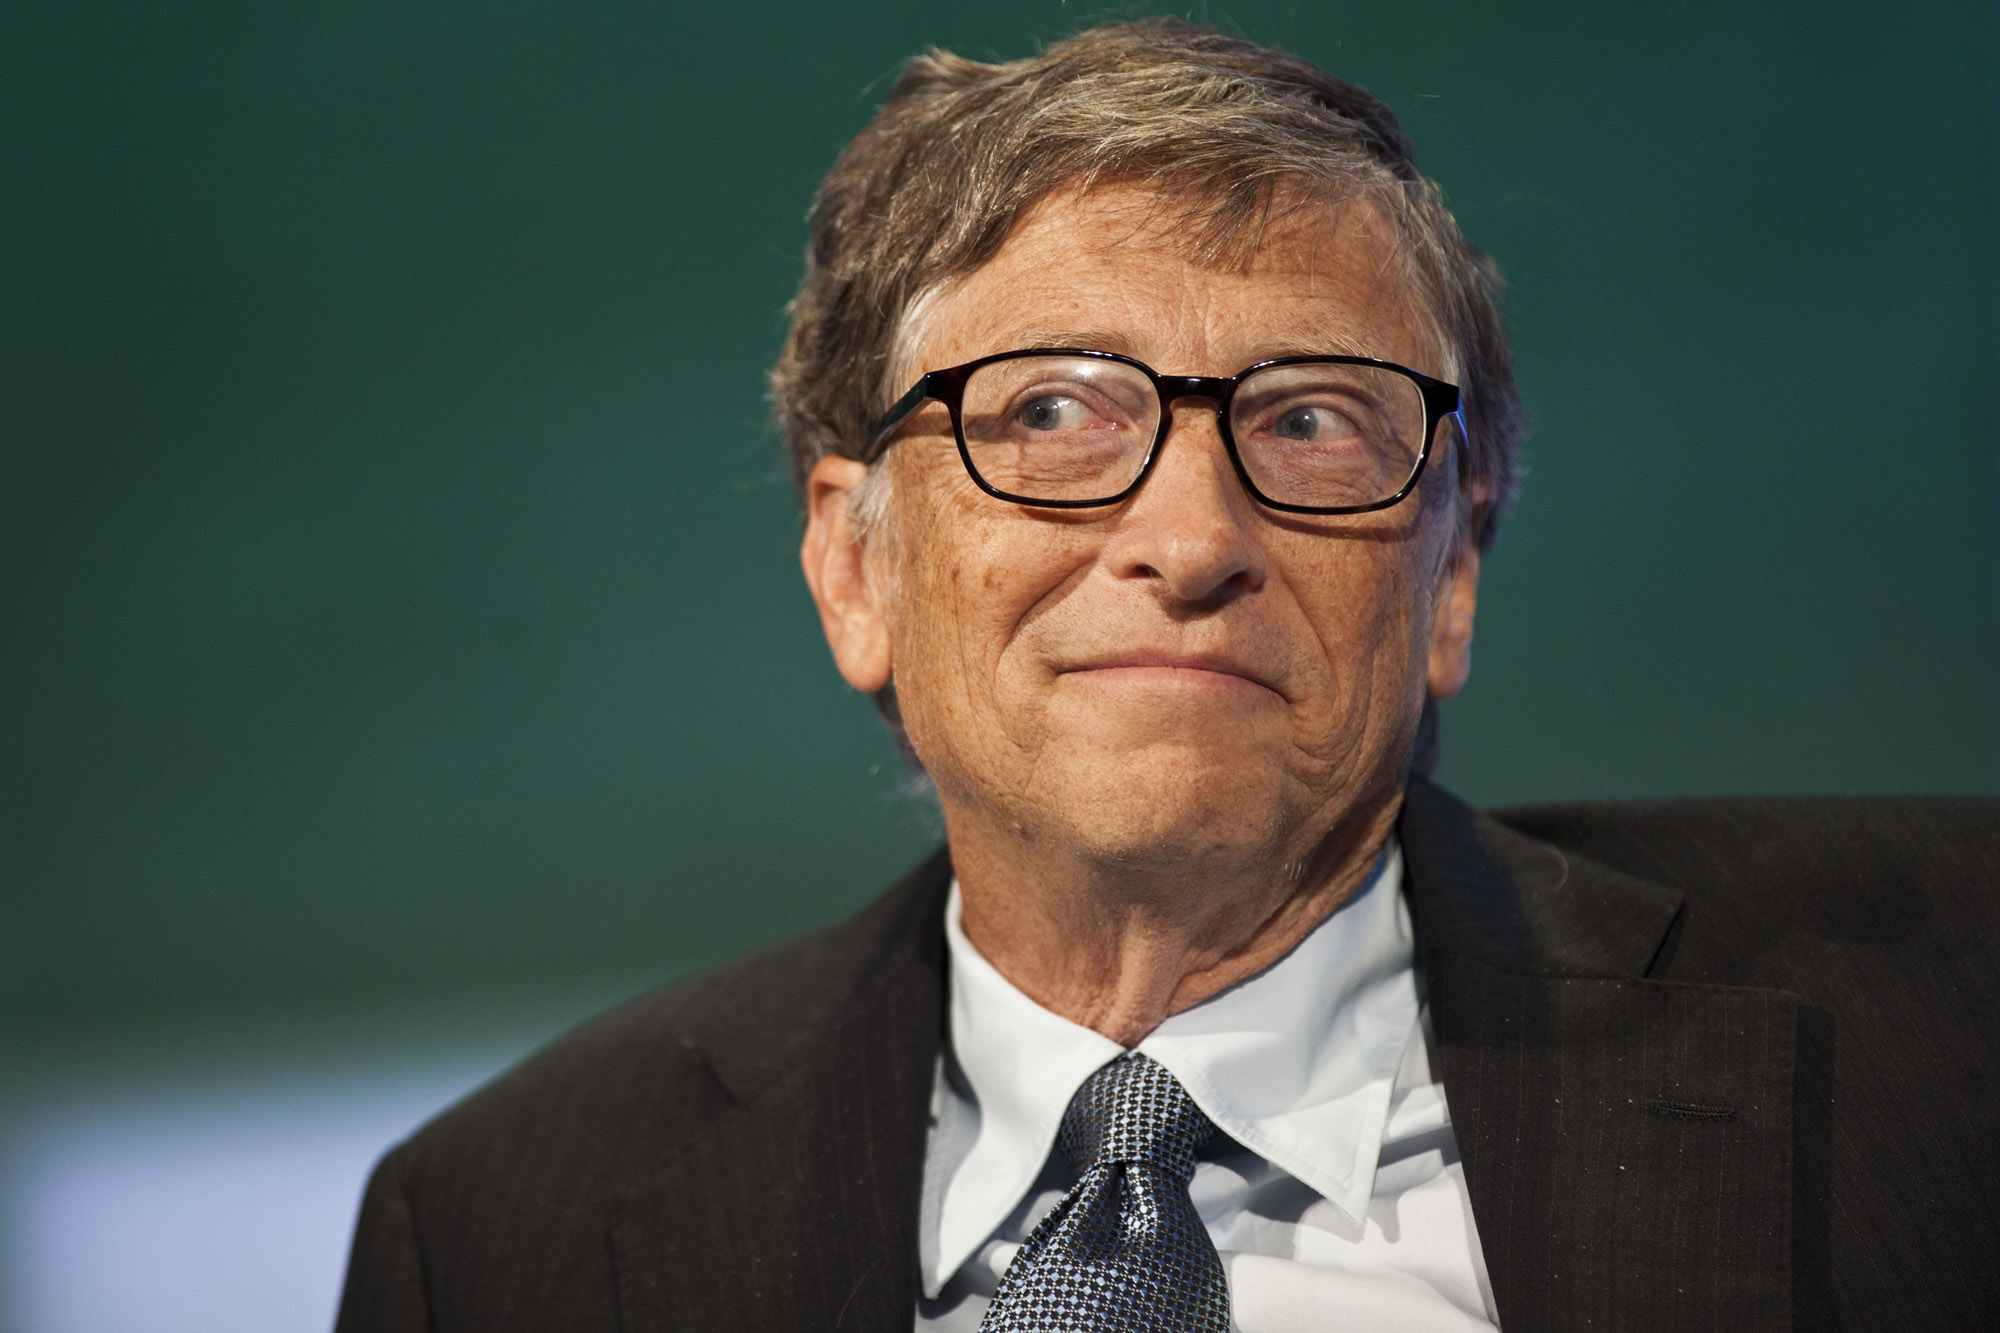 Hầu hết mọi người chỉ biết 3 chuyện về tỷ phú Bill Gates: Ông là người giàu nhất thế giới, ông là nhà sáng lập một trong những hãng công nghệ thành công nhất mọi thời đại - Microsoft, và ông cực kỳ hào phóng làm từ thiện, qua quỹ Bill & Melinda Gates. Tuy nhiên, vẫn còn rất nhiều những bí mật thú vị về người giàu nhất thế giới hiện nay mà không phải ai cũng biết.